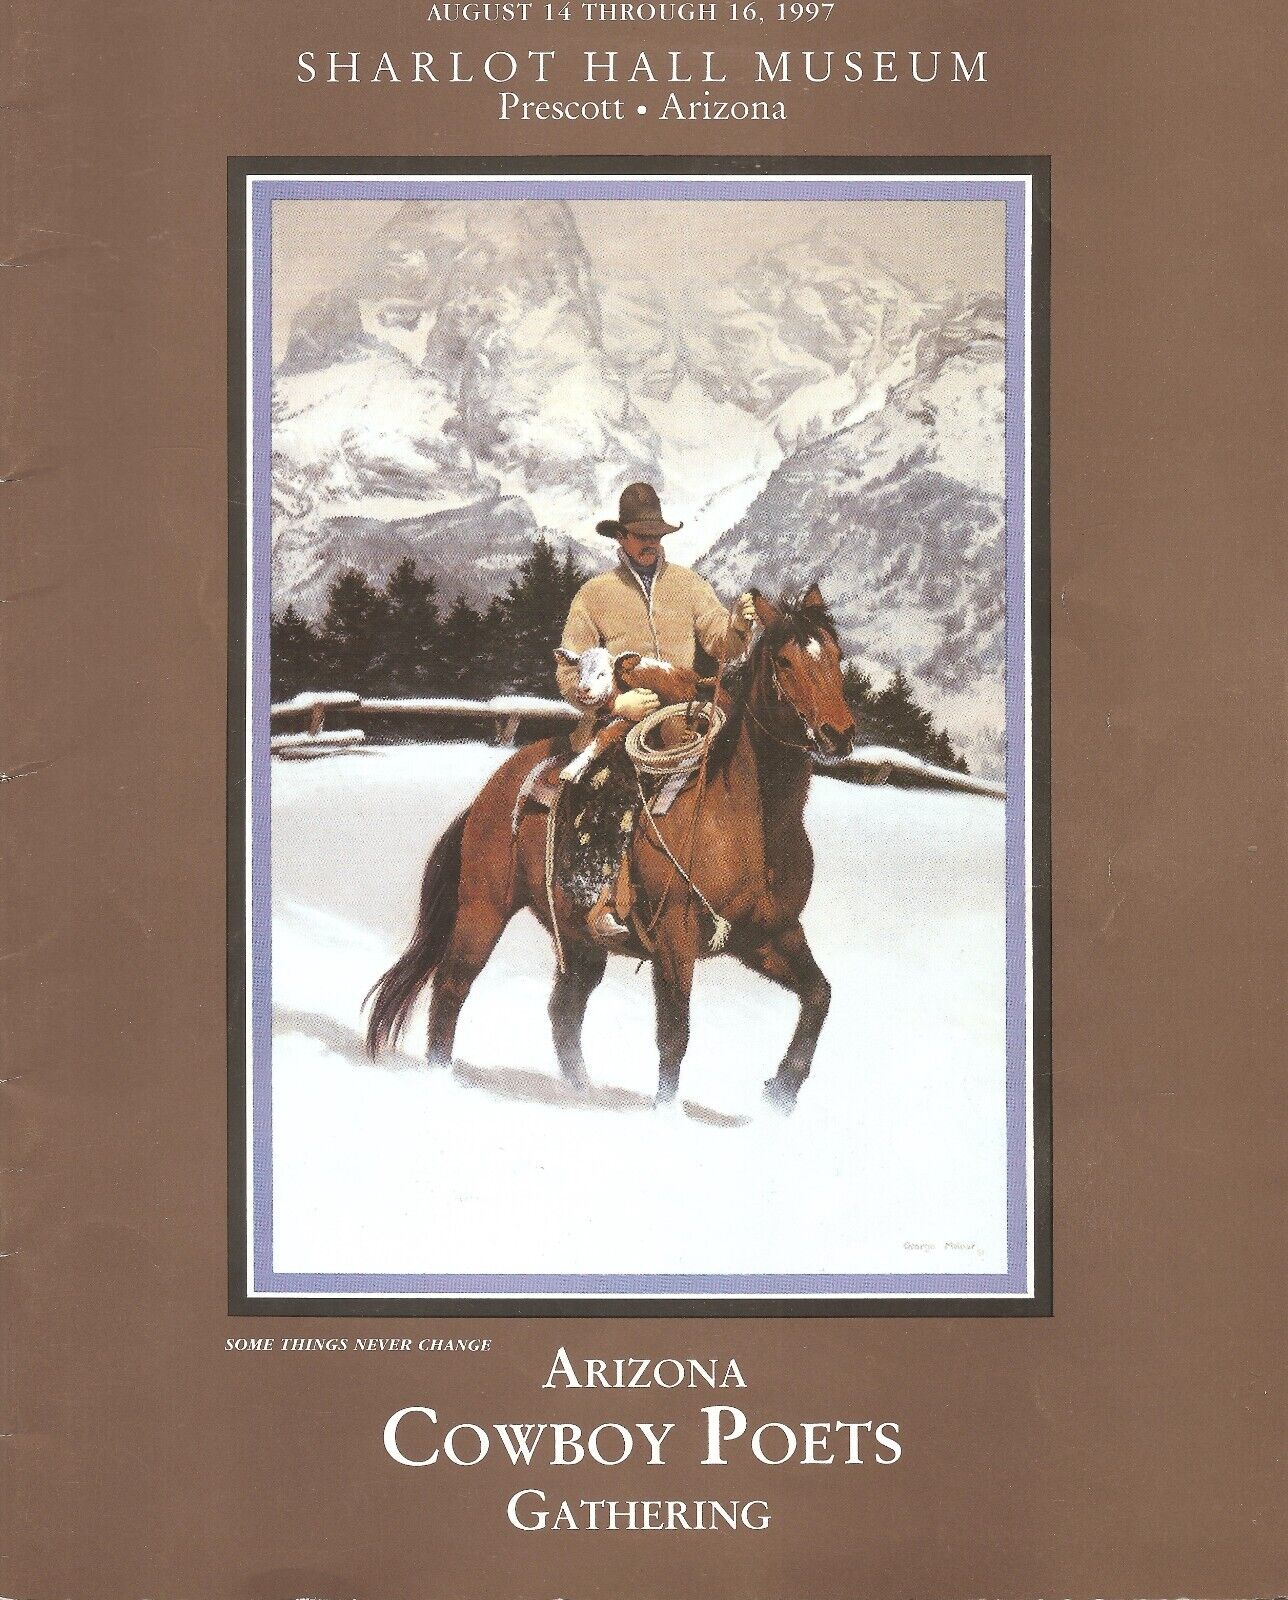 1997 - 2007 COWBOY POETS PROGRAMS PRESCOTT,AZ - 11 ISSUES